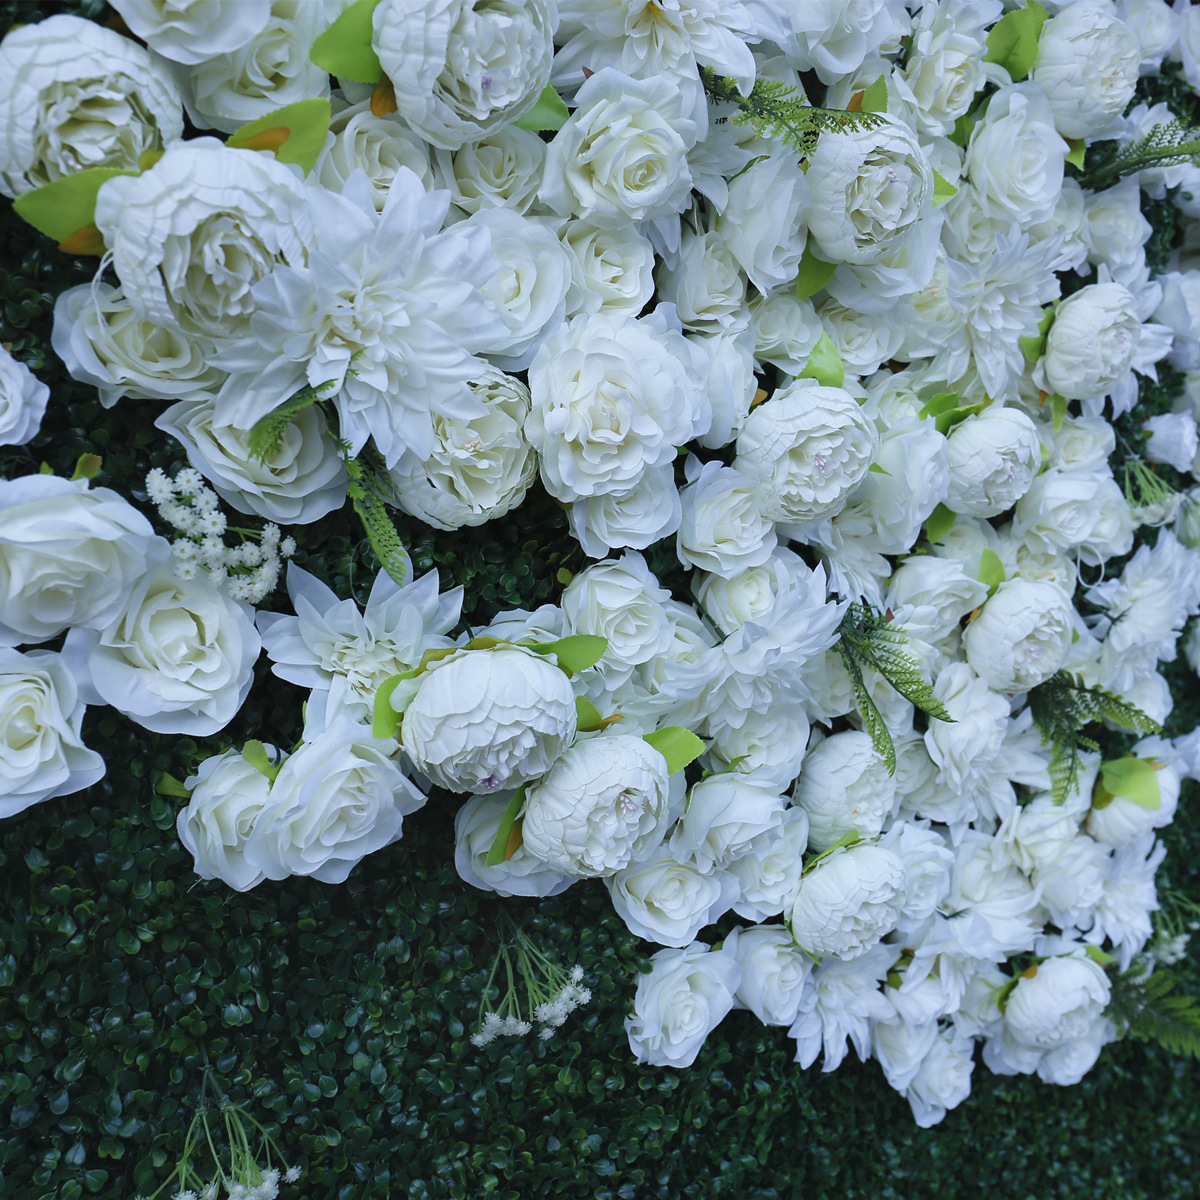 Simulierte Pflanze, grüne Pflanze, Hintergrundwand, Hochzeitsdekoration, Hochzeitsdekoration, weißer Stoffboden, Blumenwand